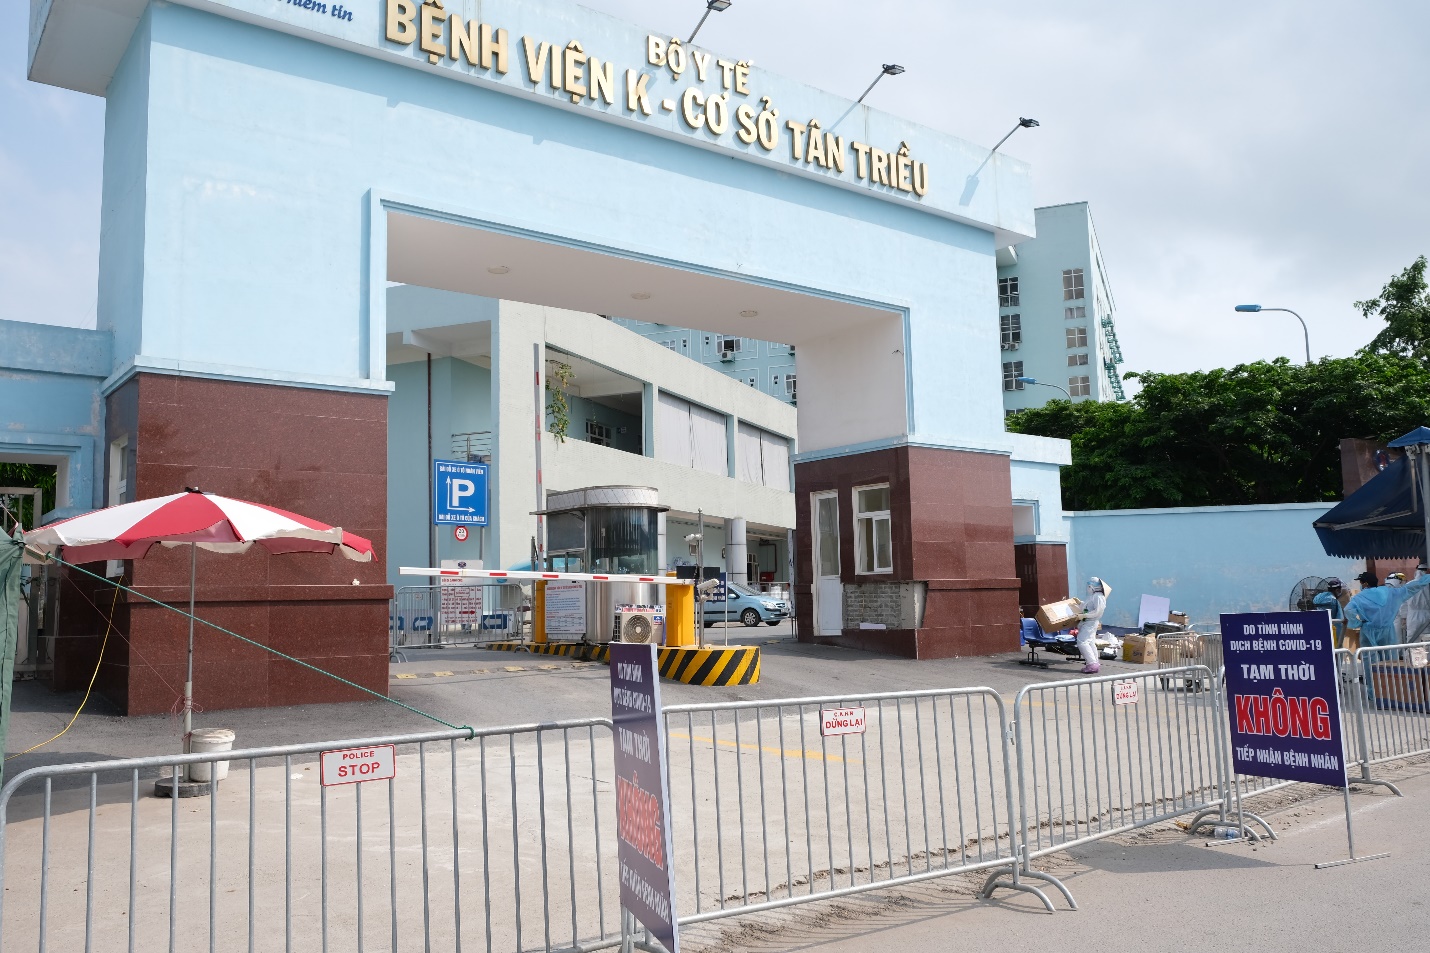 Vietcombank trao tặng 5 tỷ đồng và 10.000 suất ăn hỗ trợ Bệnh viện K cơ sở Tân Triều phòng chống dịch COVID-19 - Ảnh 3.